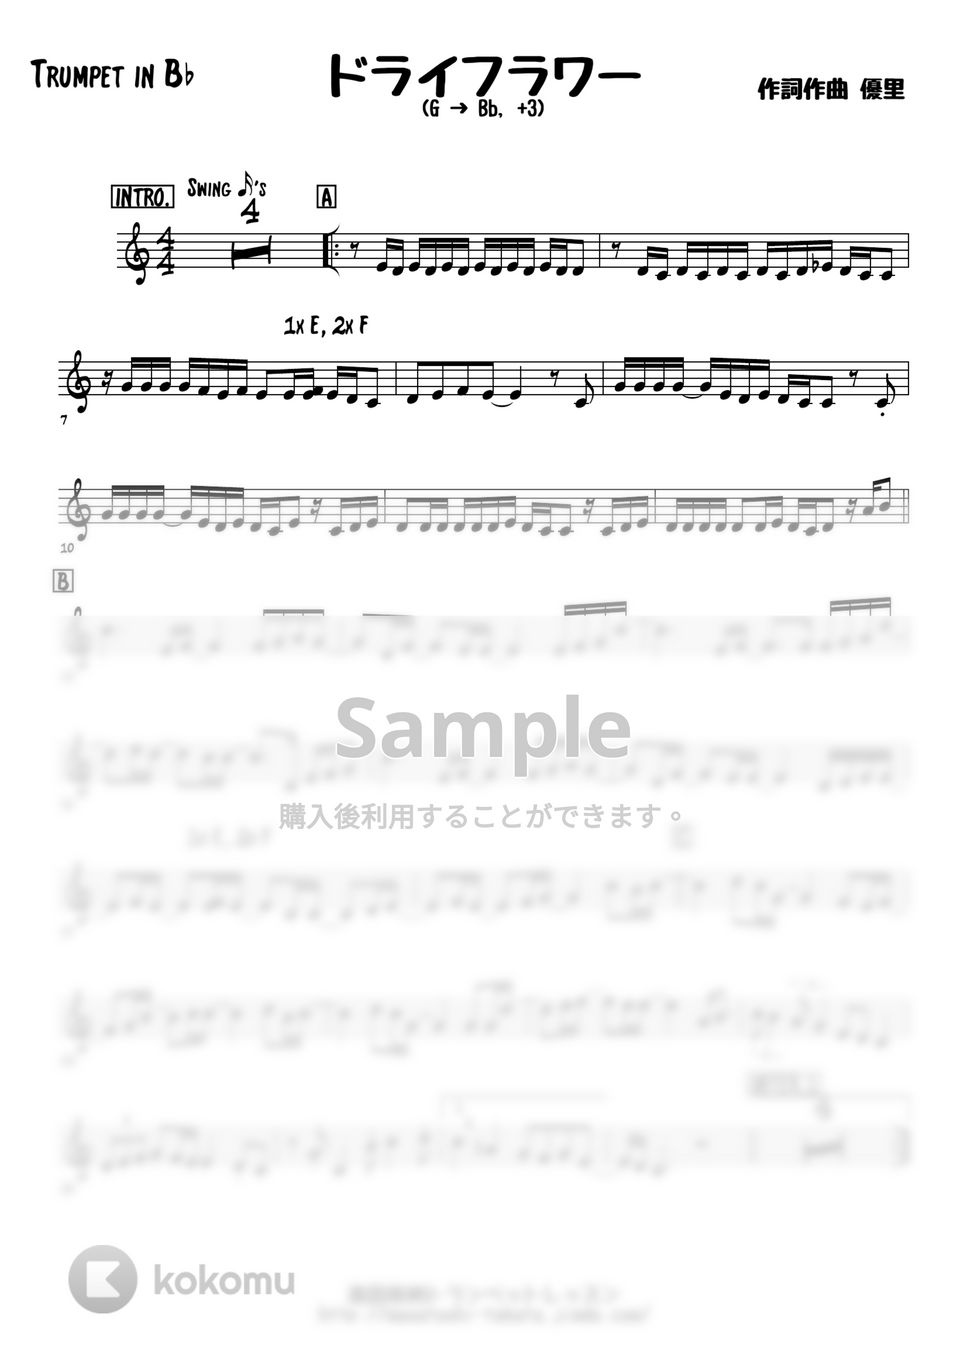 優里 - ドライフラワー (メロディー楽譜) by 高田将利